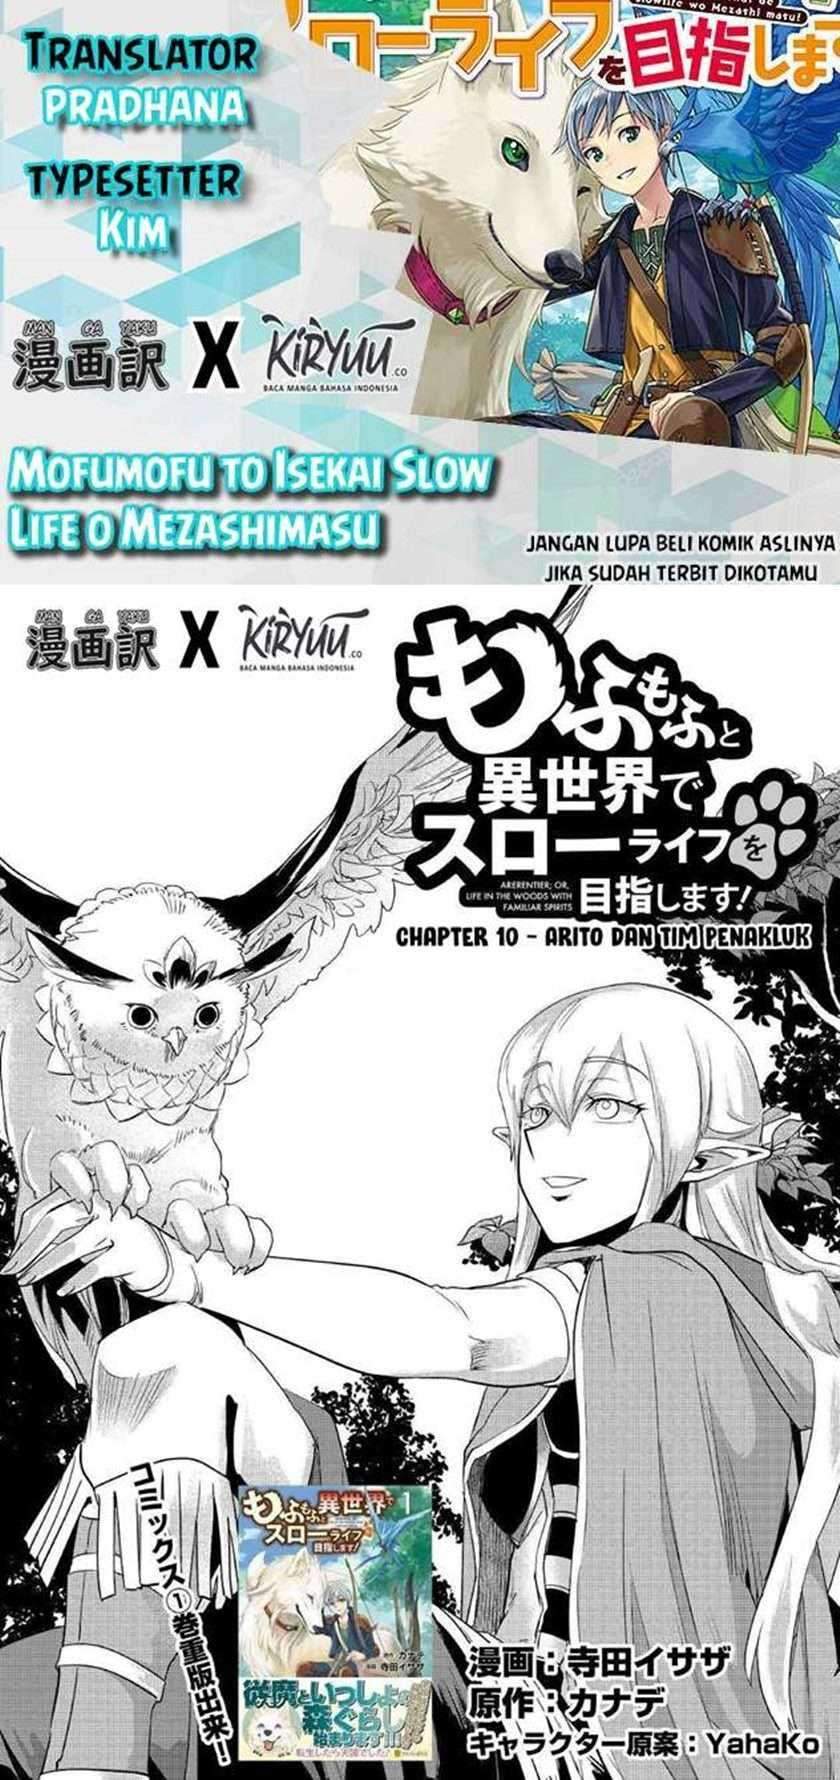 Mofumofu To Isekai Slow Life O Mezashimasu! Chapter 10 - 289